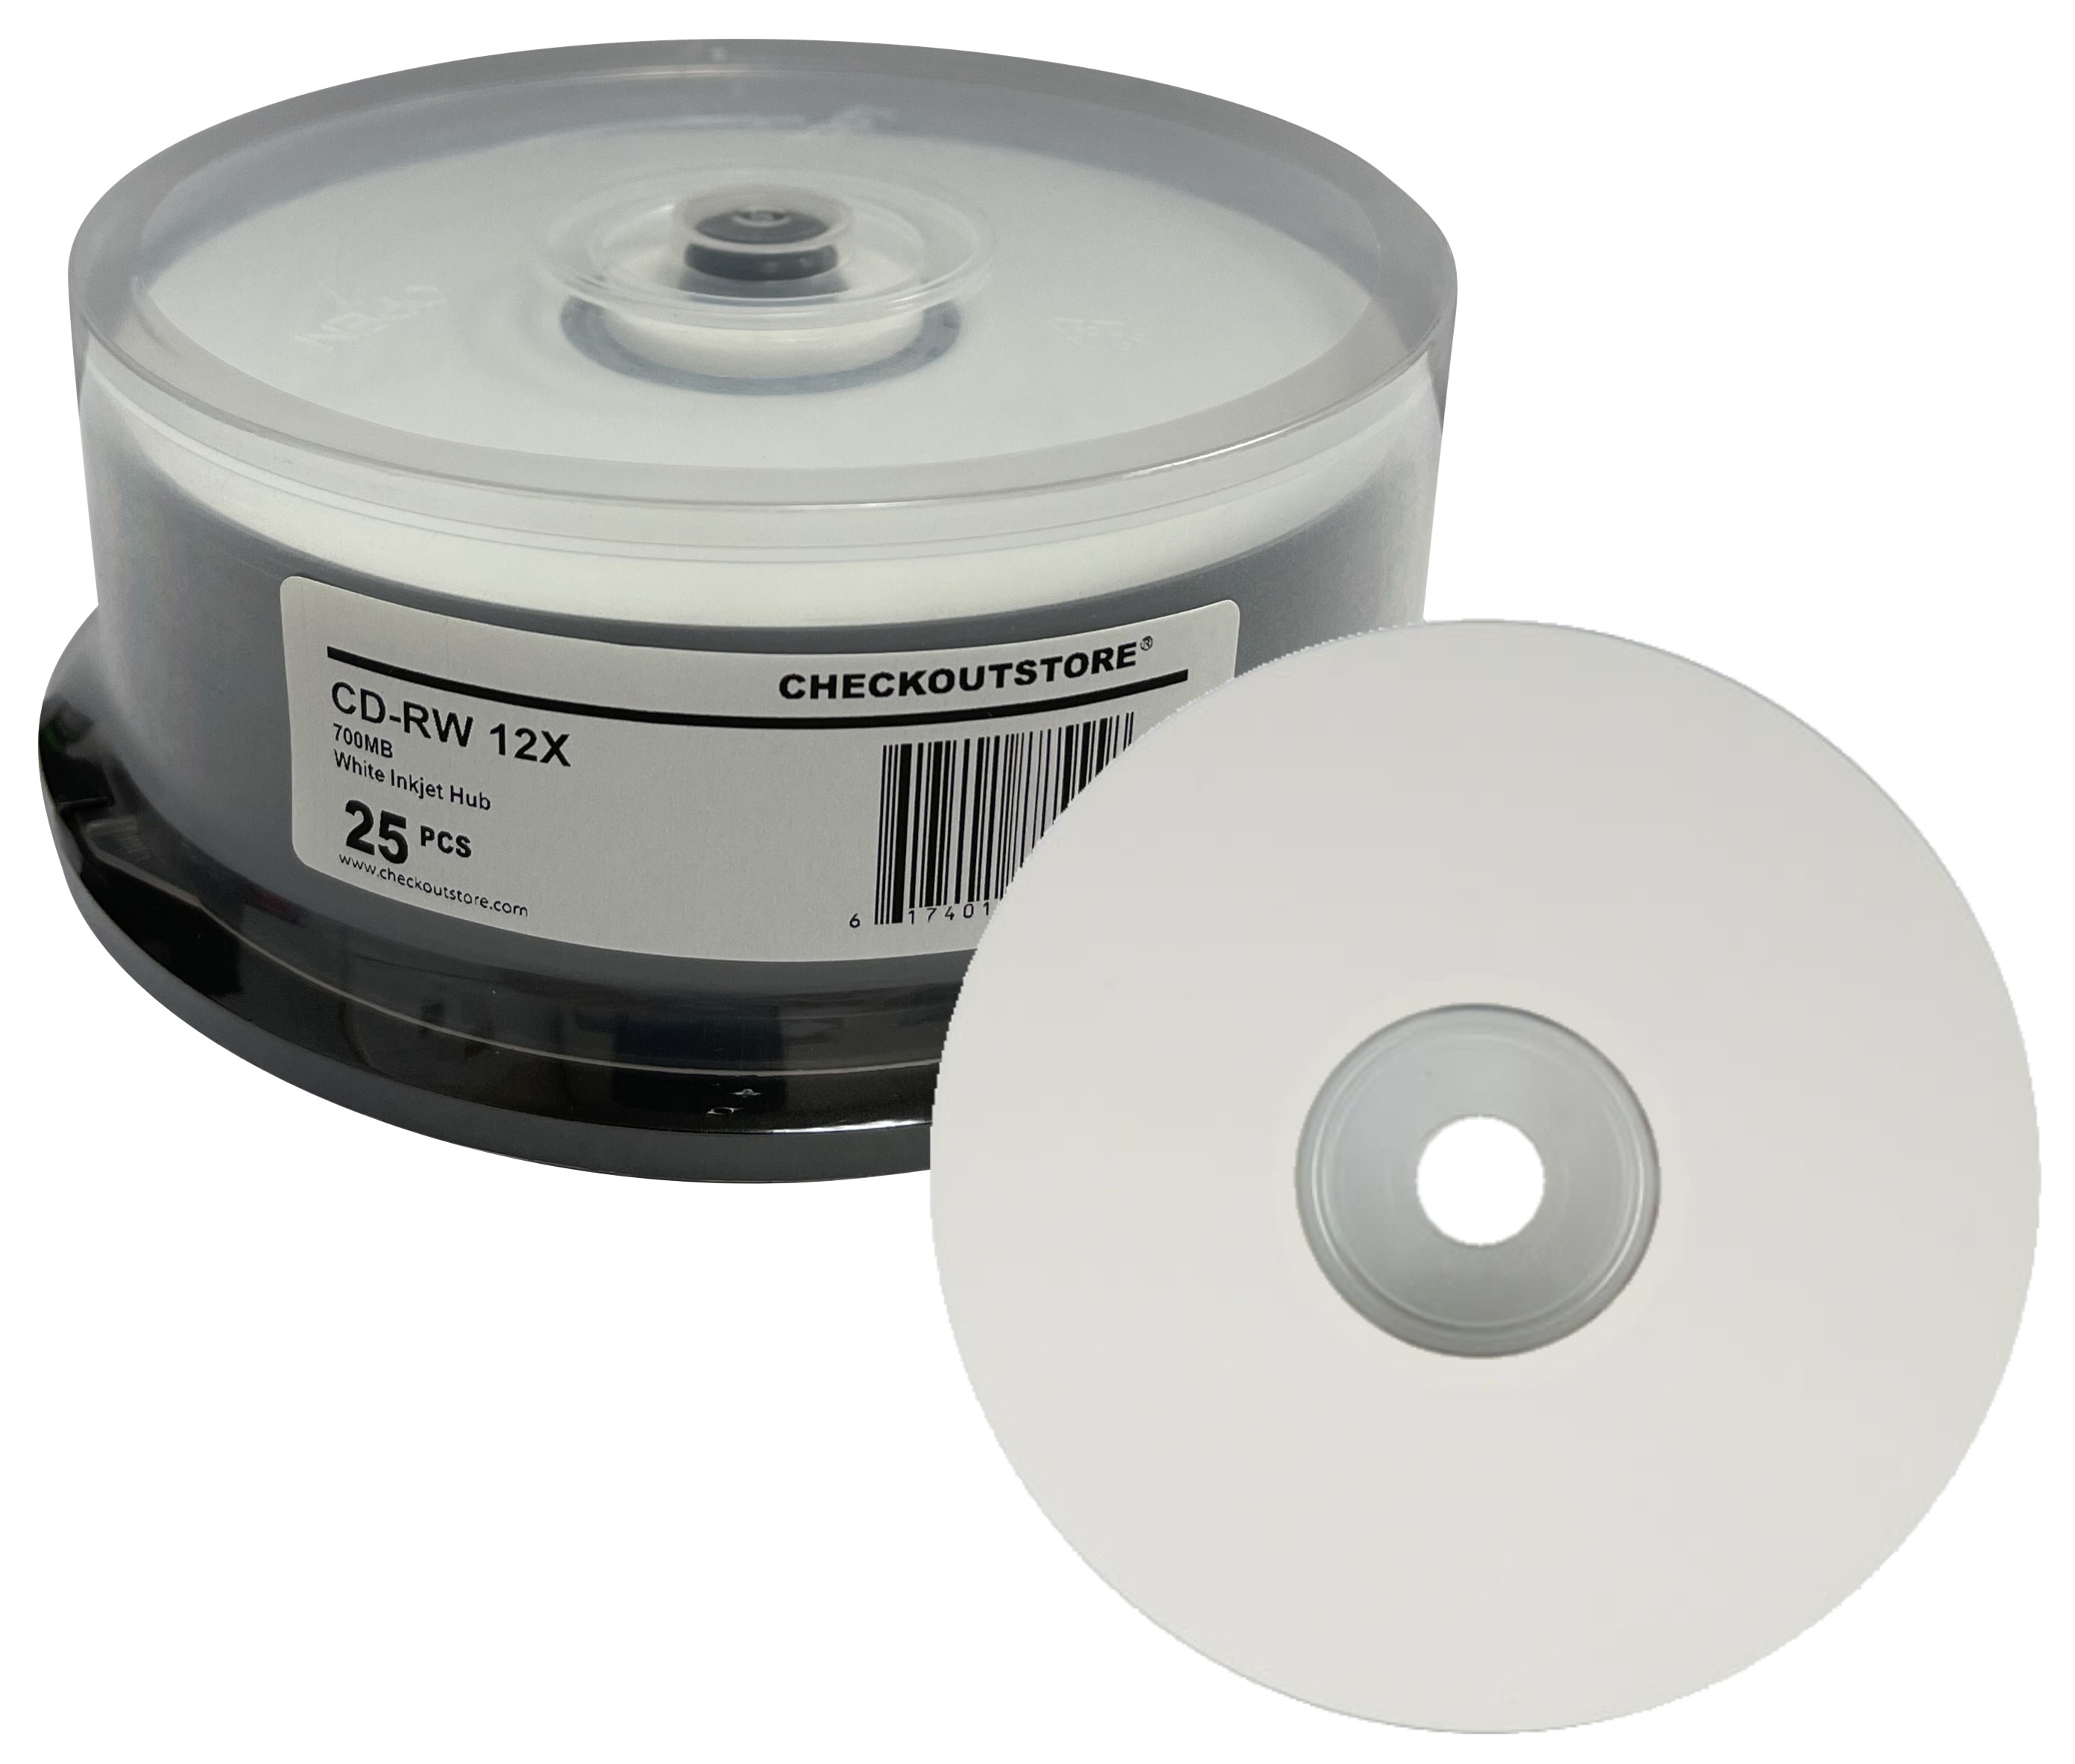 200 CheckOutStore CD-RW 12X 80Min/700MB White Inkjet